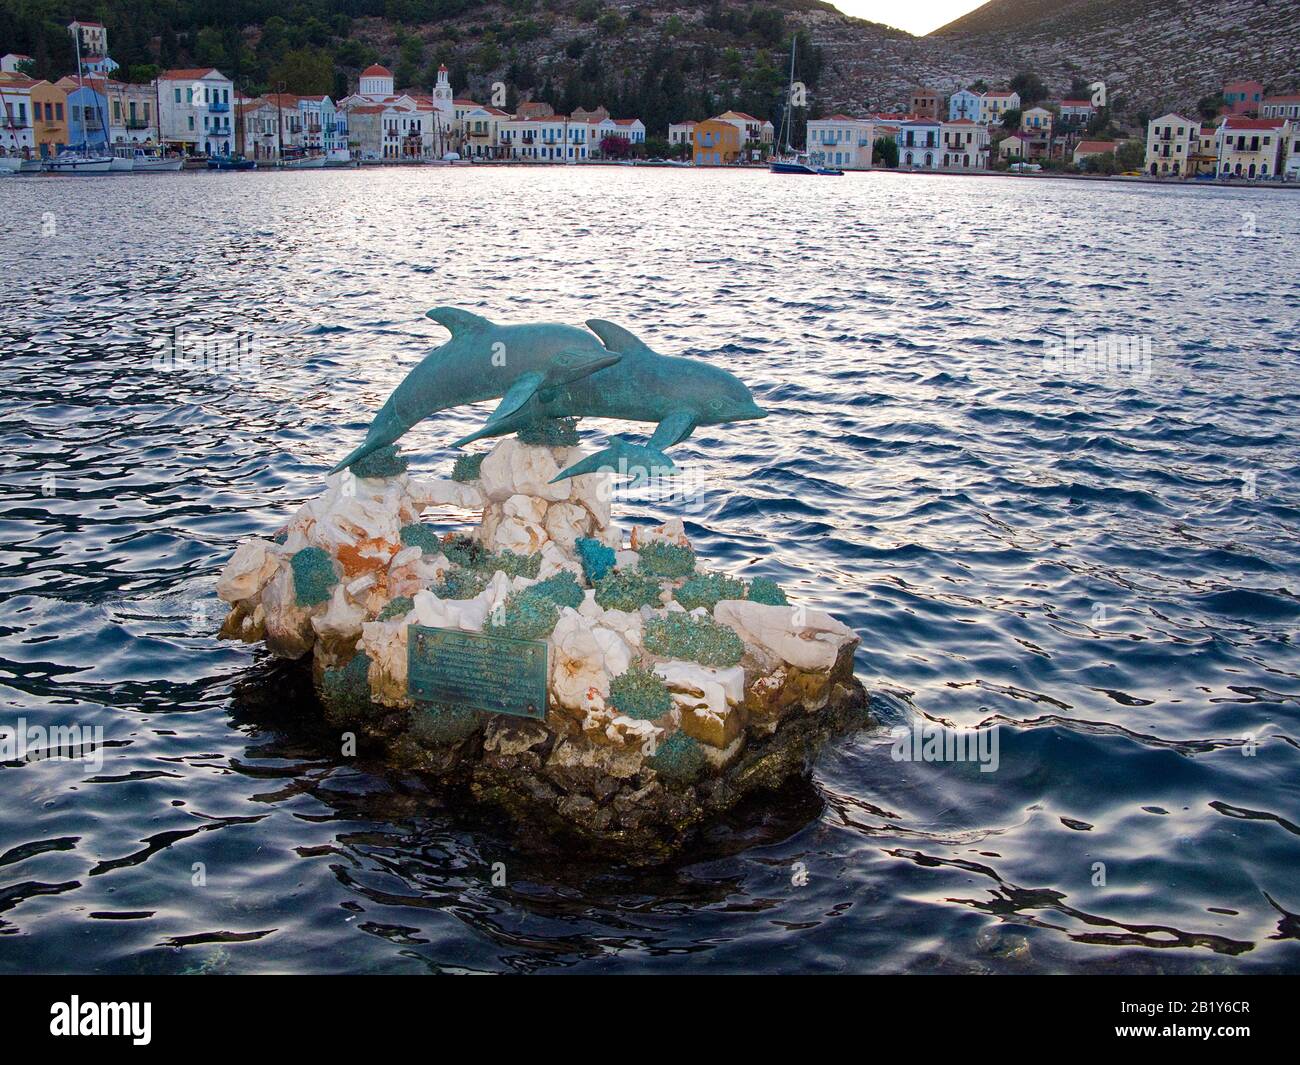 Abendstimmung in Kastelorizo, Delfin-Statue im Hafen der Insel Meis, Südägäis, Griechenland | Evening mood at Meis island, also known as Kastellorizo, Stock Photo